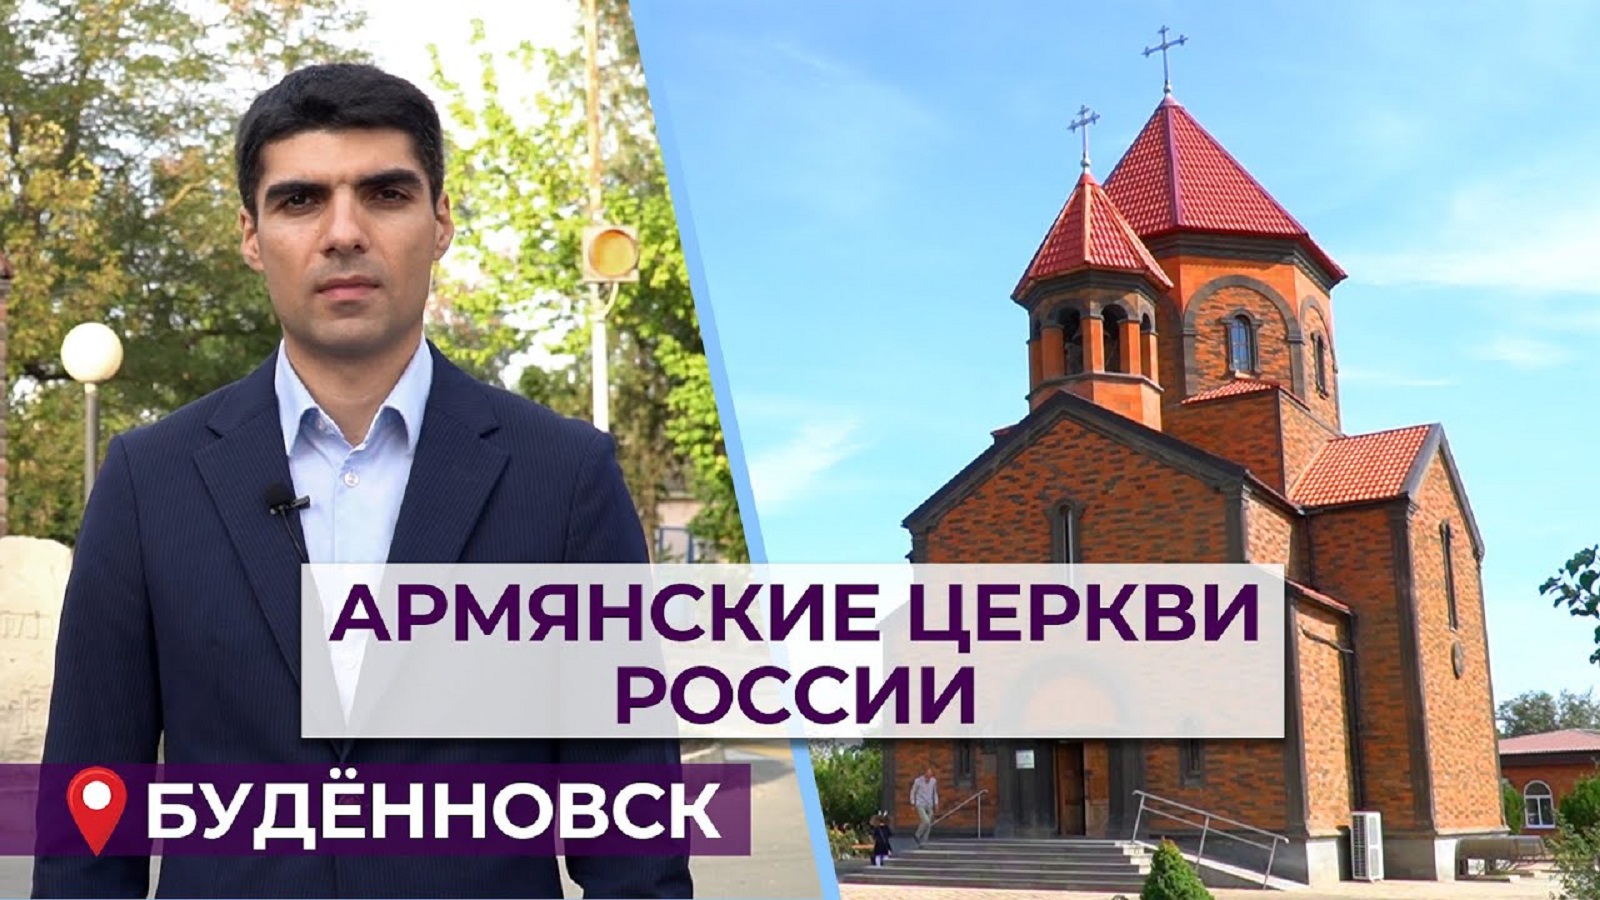 Армянские церкви России/Буденновск/HAYK media